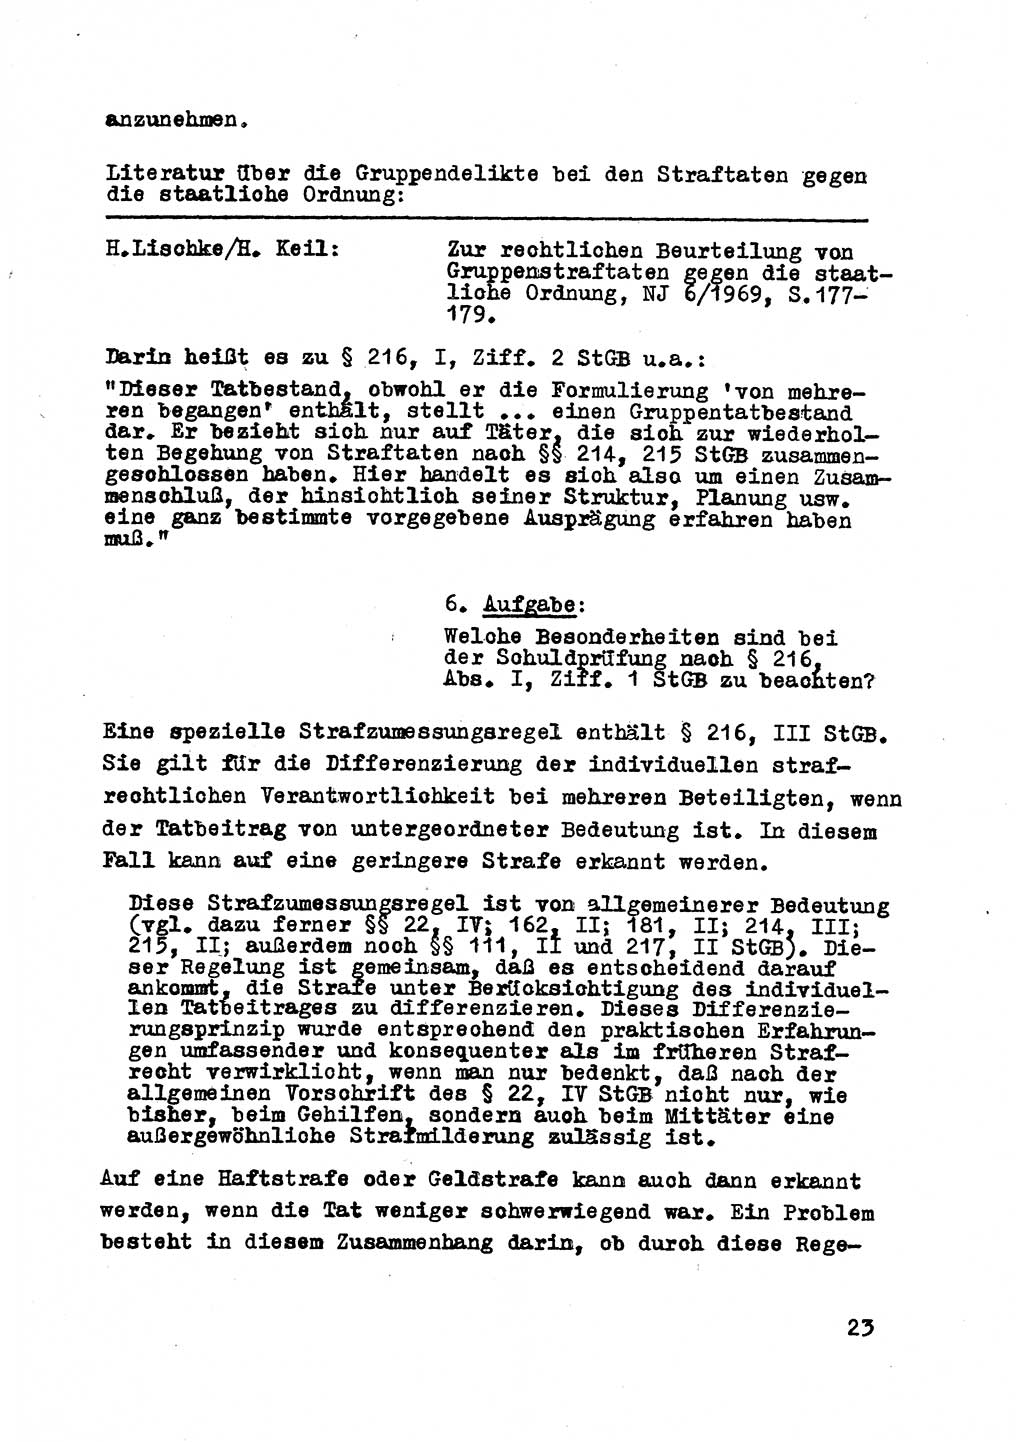 Strafrecht der DDR (Deutsche Demokratische Republik), Besonderer Teil, Lehrmaterial, Heft 8 1970, Seite 23 (Strafr. DDR BT Lehrmat. H. 8 1970, S. 23)